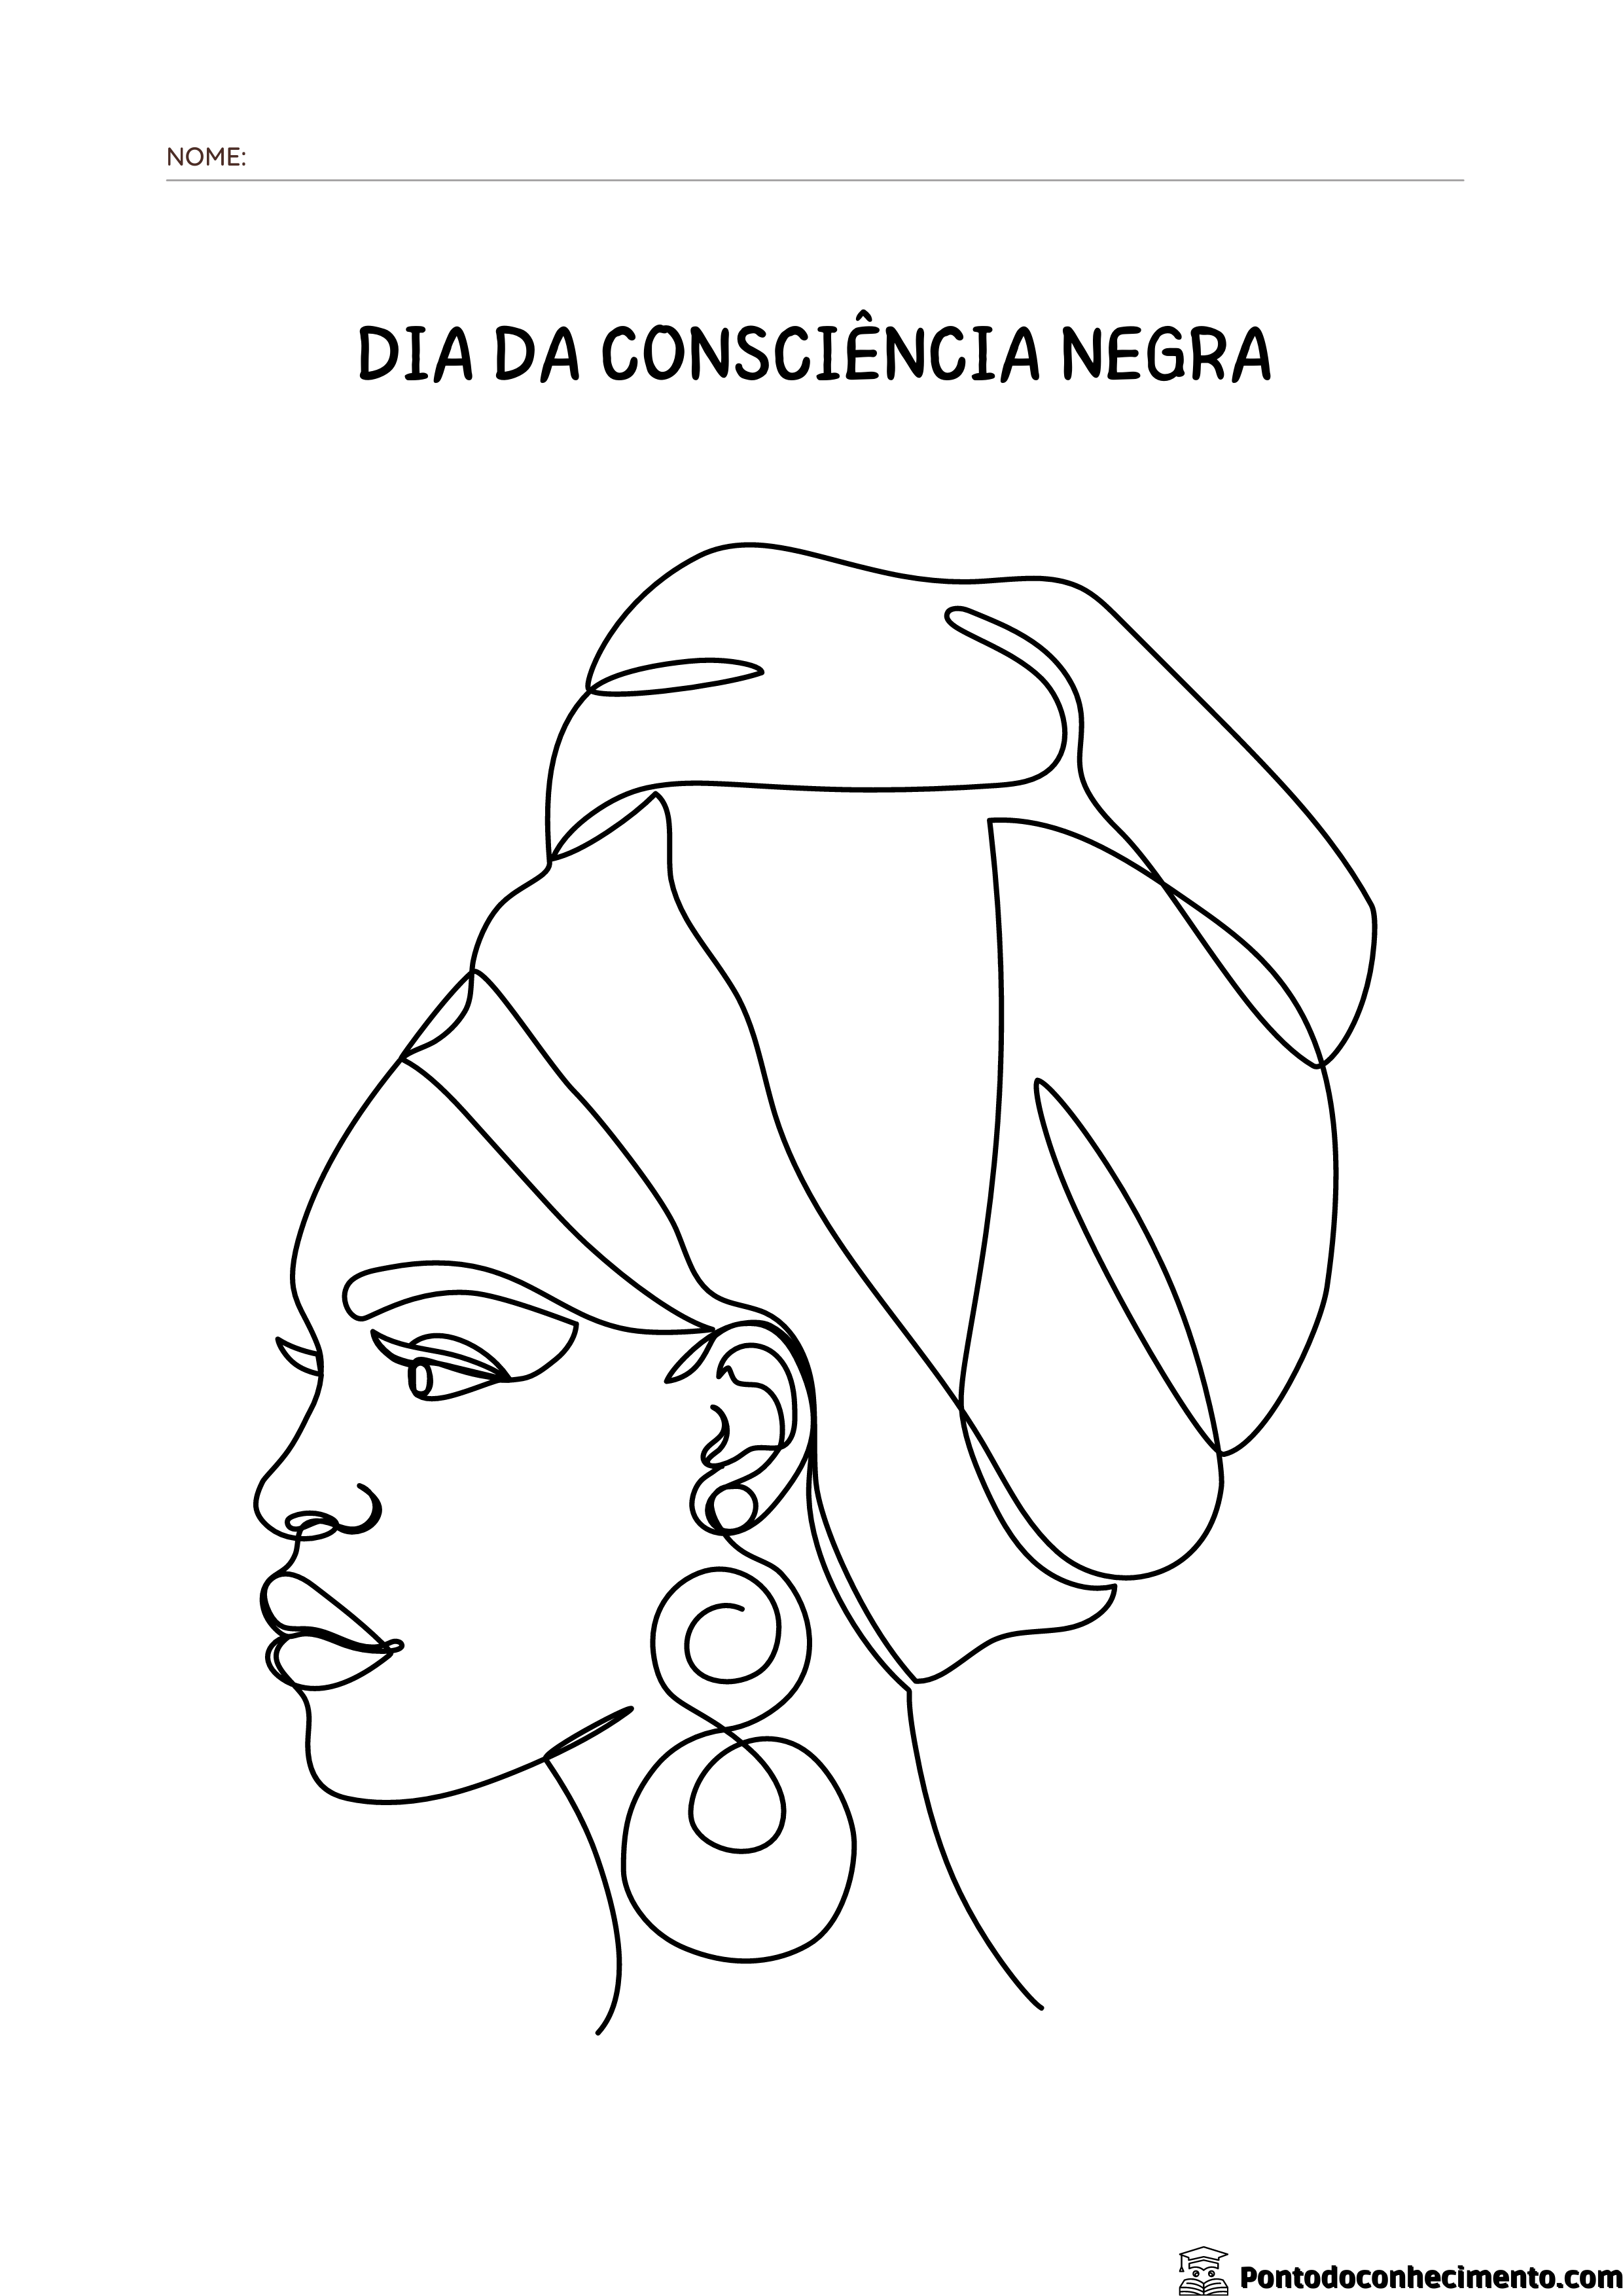 Atividades com os desenhos da Consciência Negra